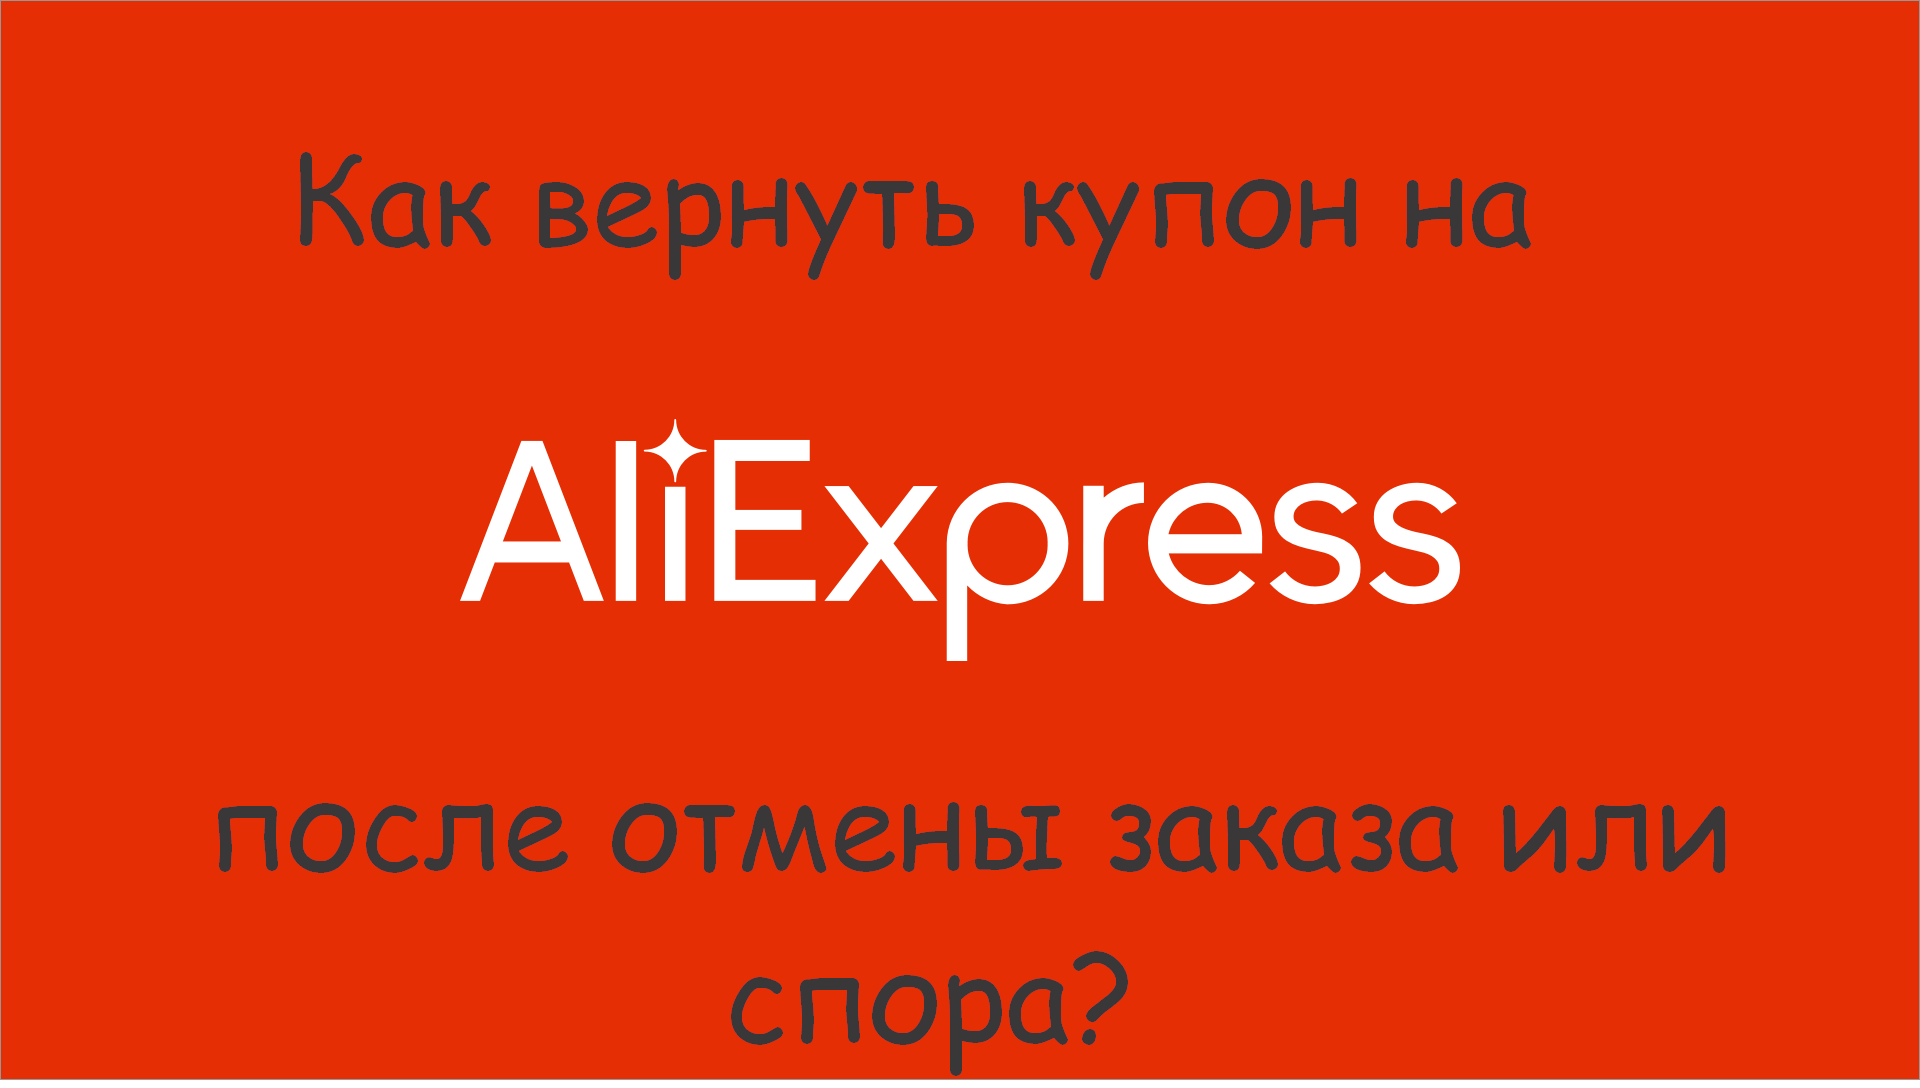 Aliexpress Как Вернуть Деньги При Отмене Заказа